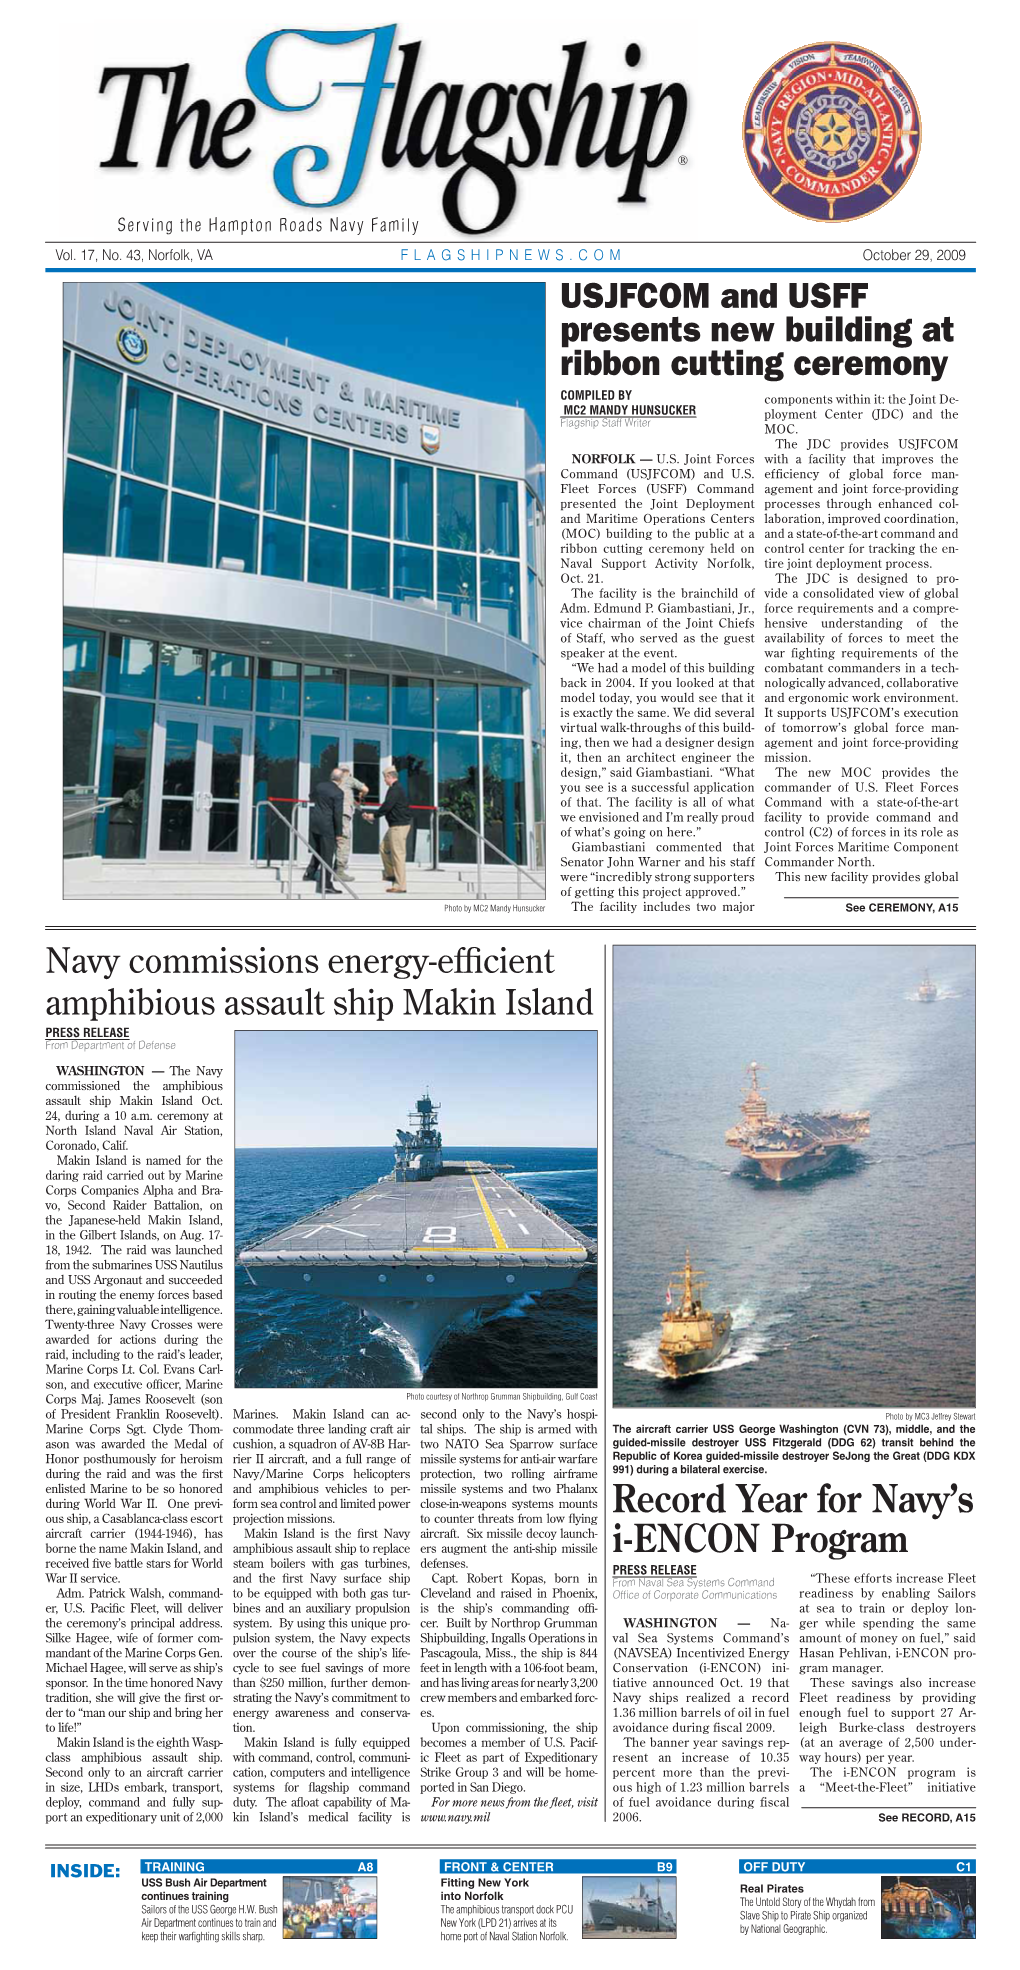 Record Year for Navy's I-ENCON Program